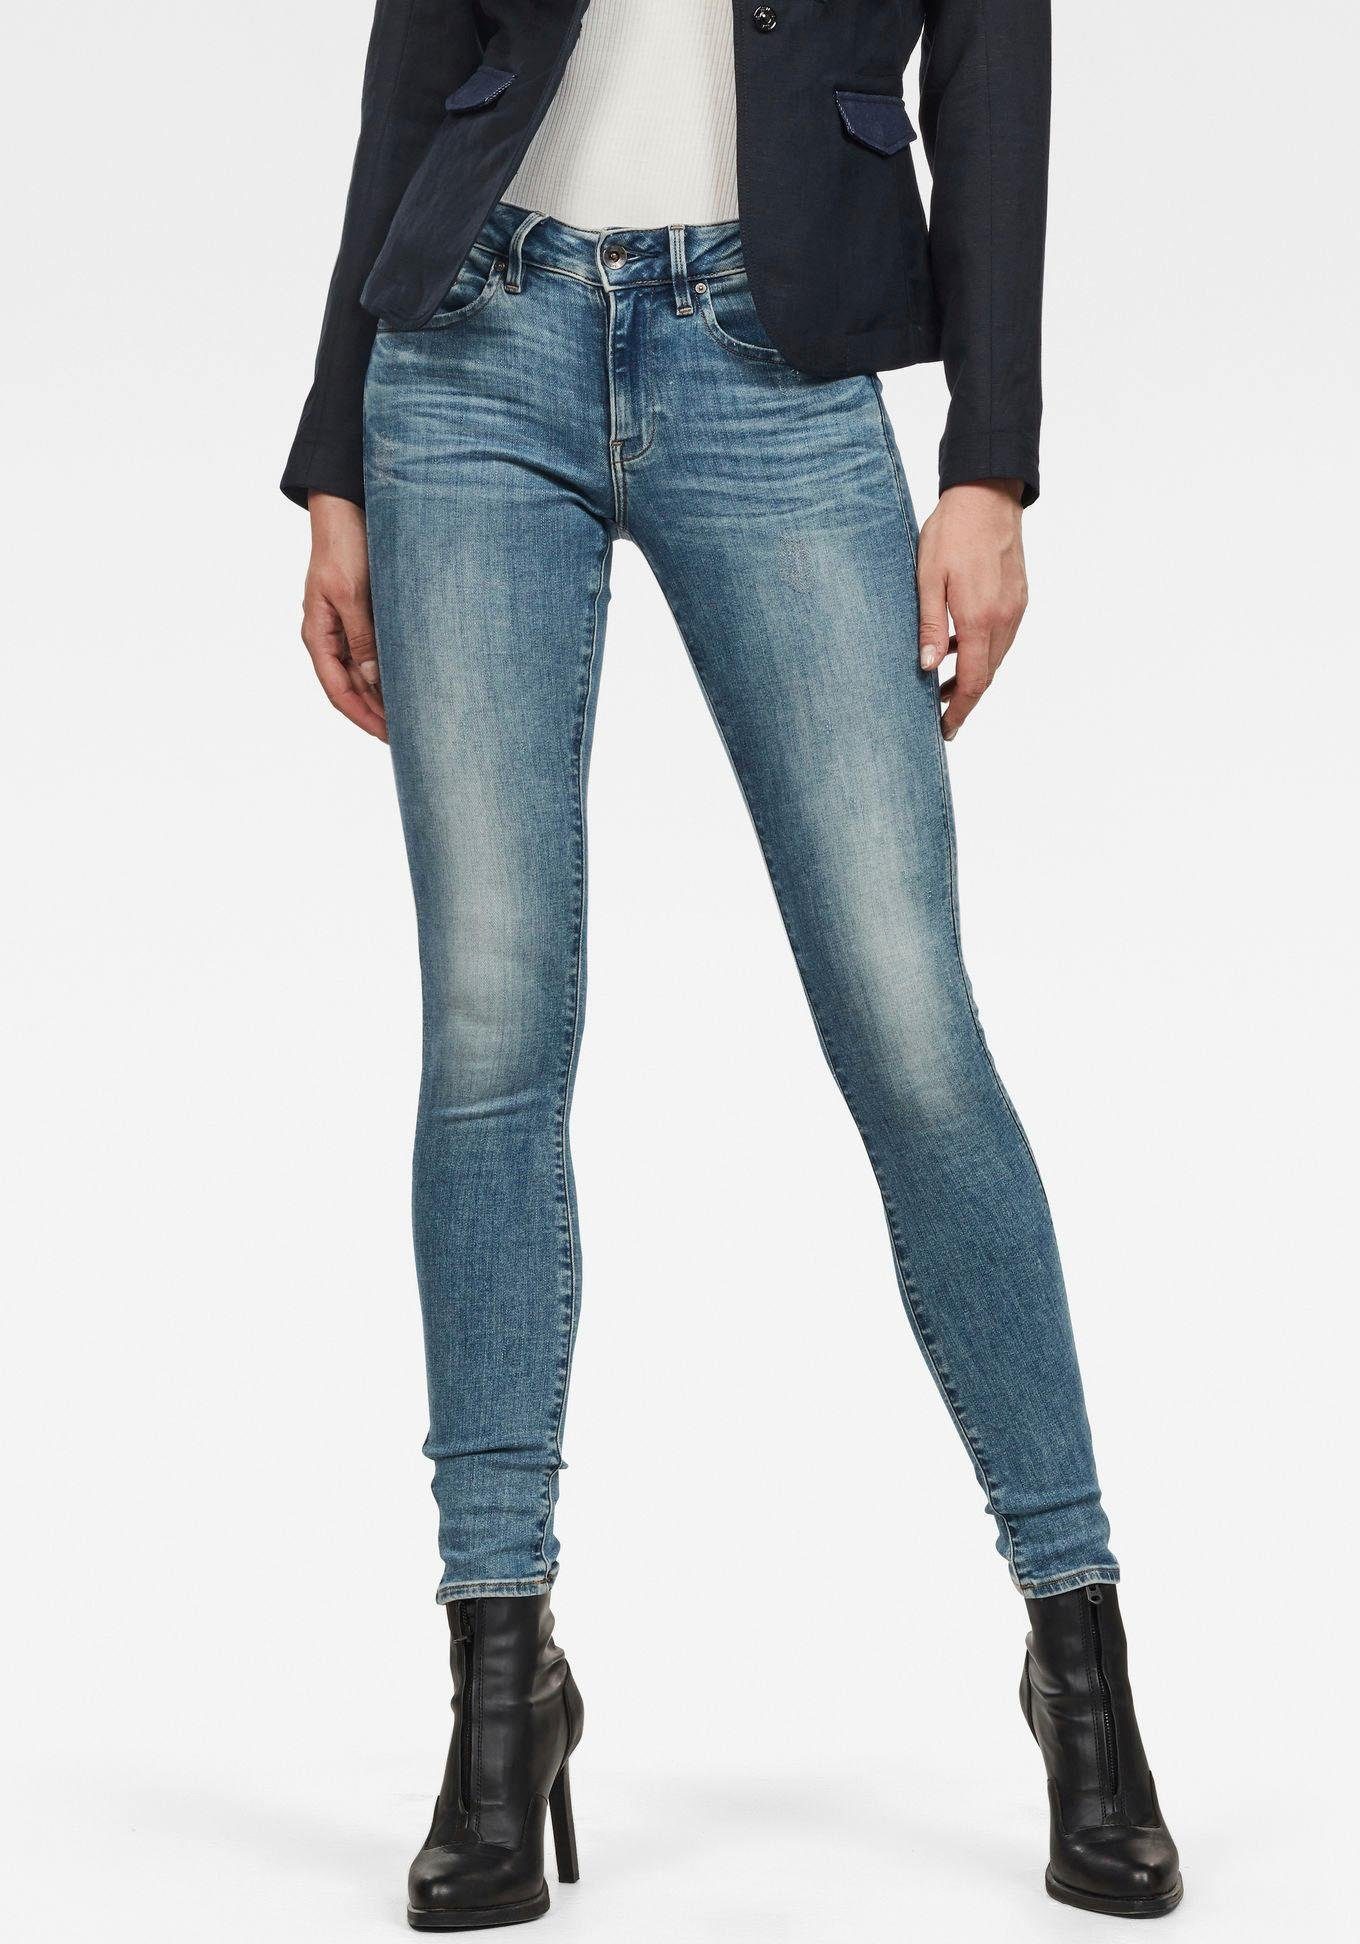 Damen Skinny Jeans Hose mit Zip hinten 